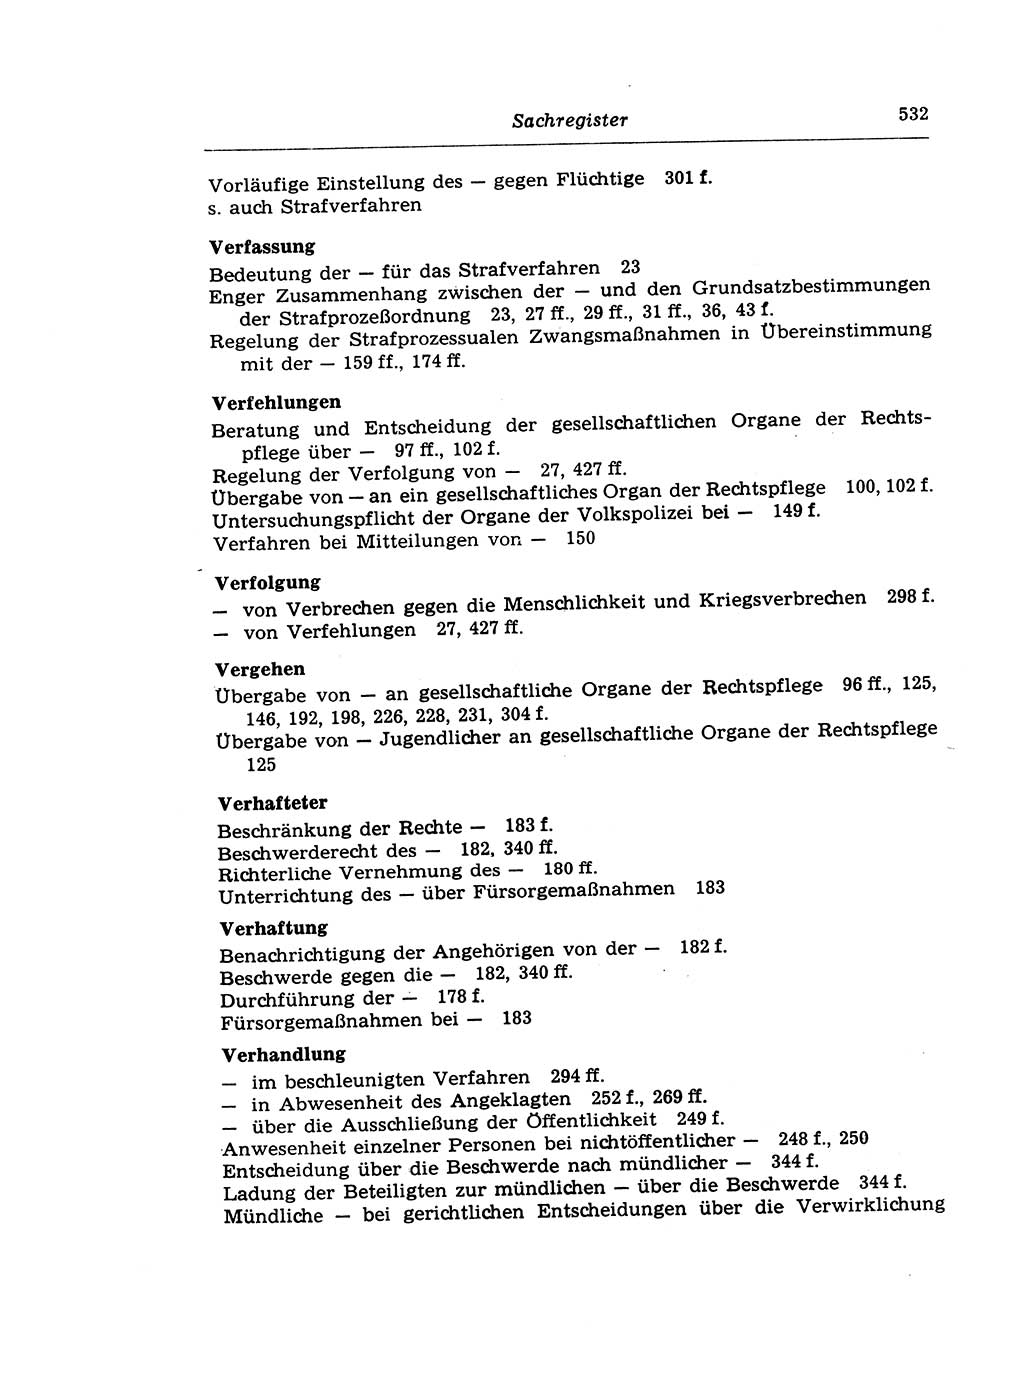 Strafprozeßrecht der DDR (Deutsche Demokratische Republik), Lehrkommentar zur Strafprozeßordnung (StPO) 1968, Seite 532 (Strafprozeßr. DDR Lehrkomm. StPO 19688, S. 532)